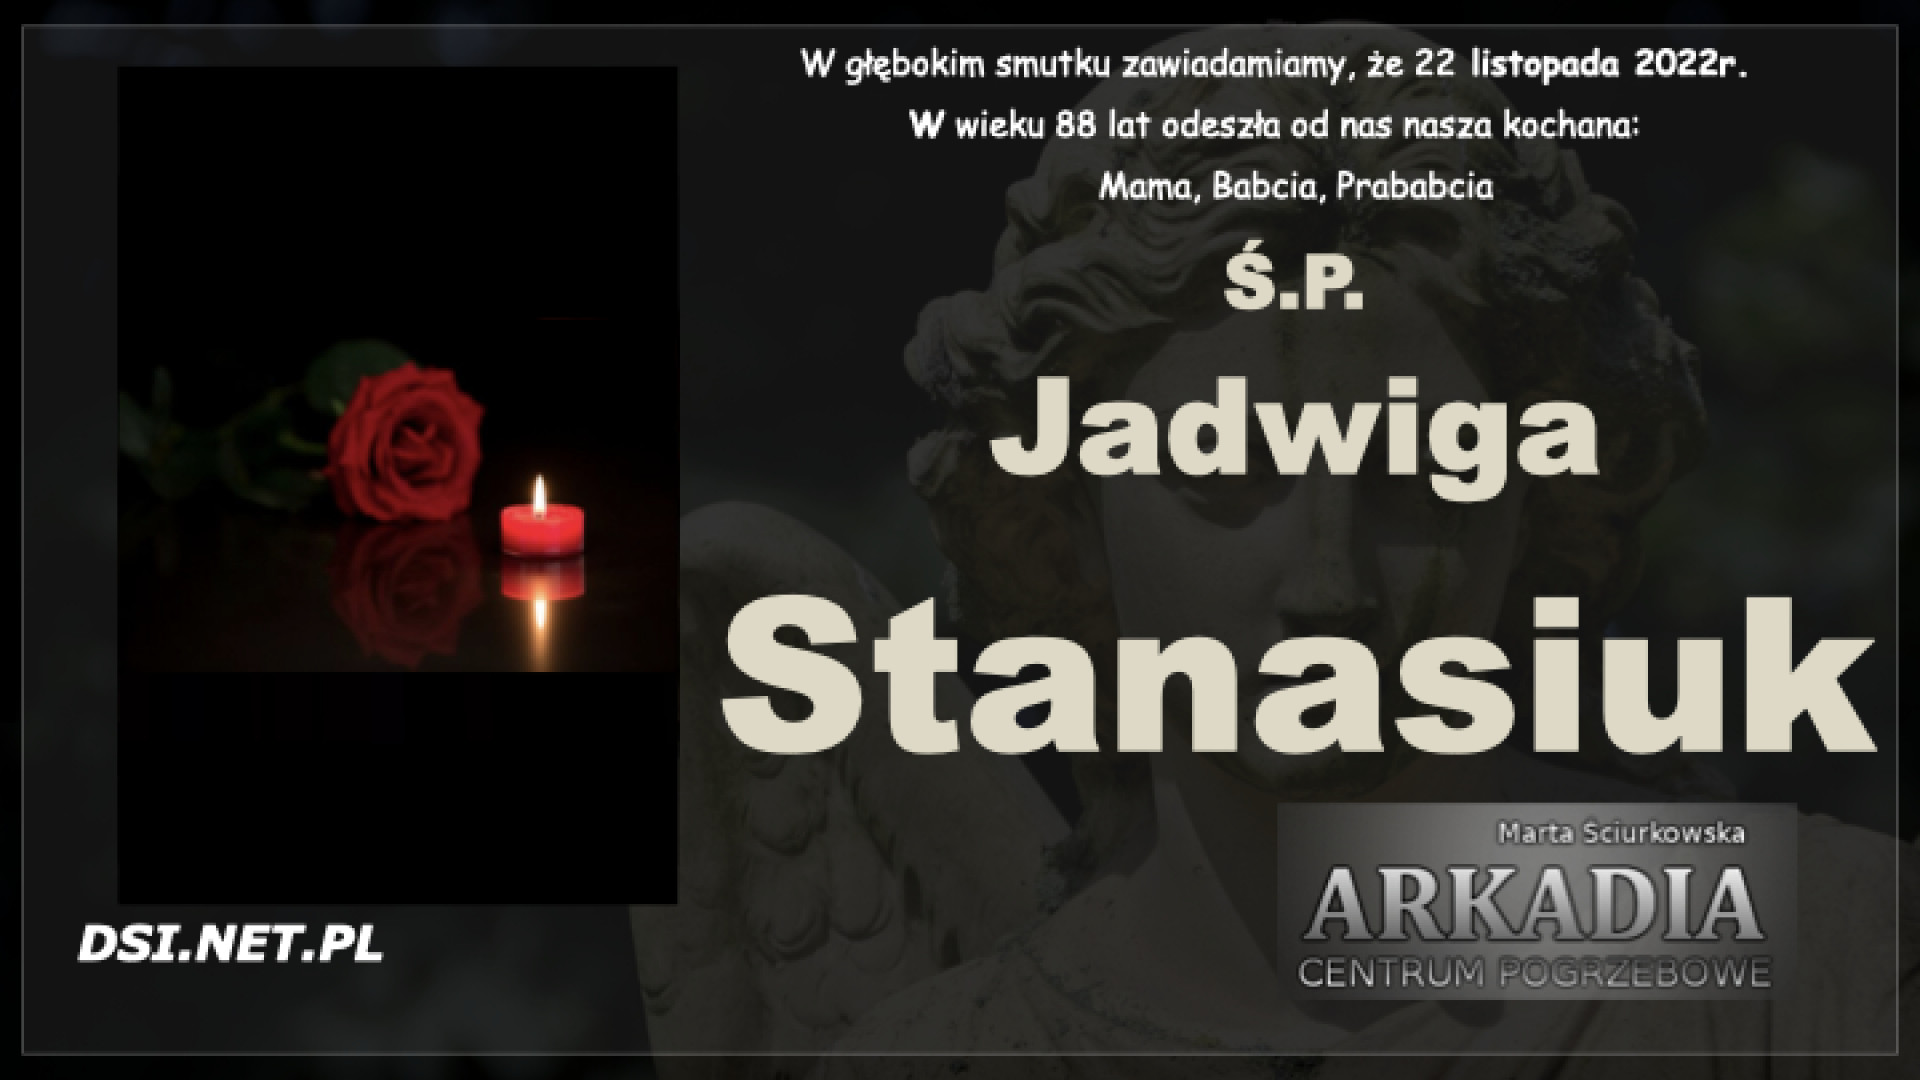 Ś.P. Jadwiga Stanasiuk